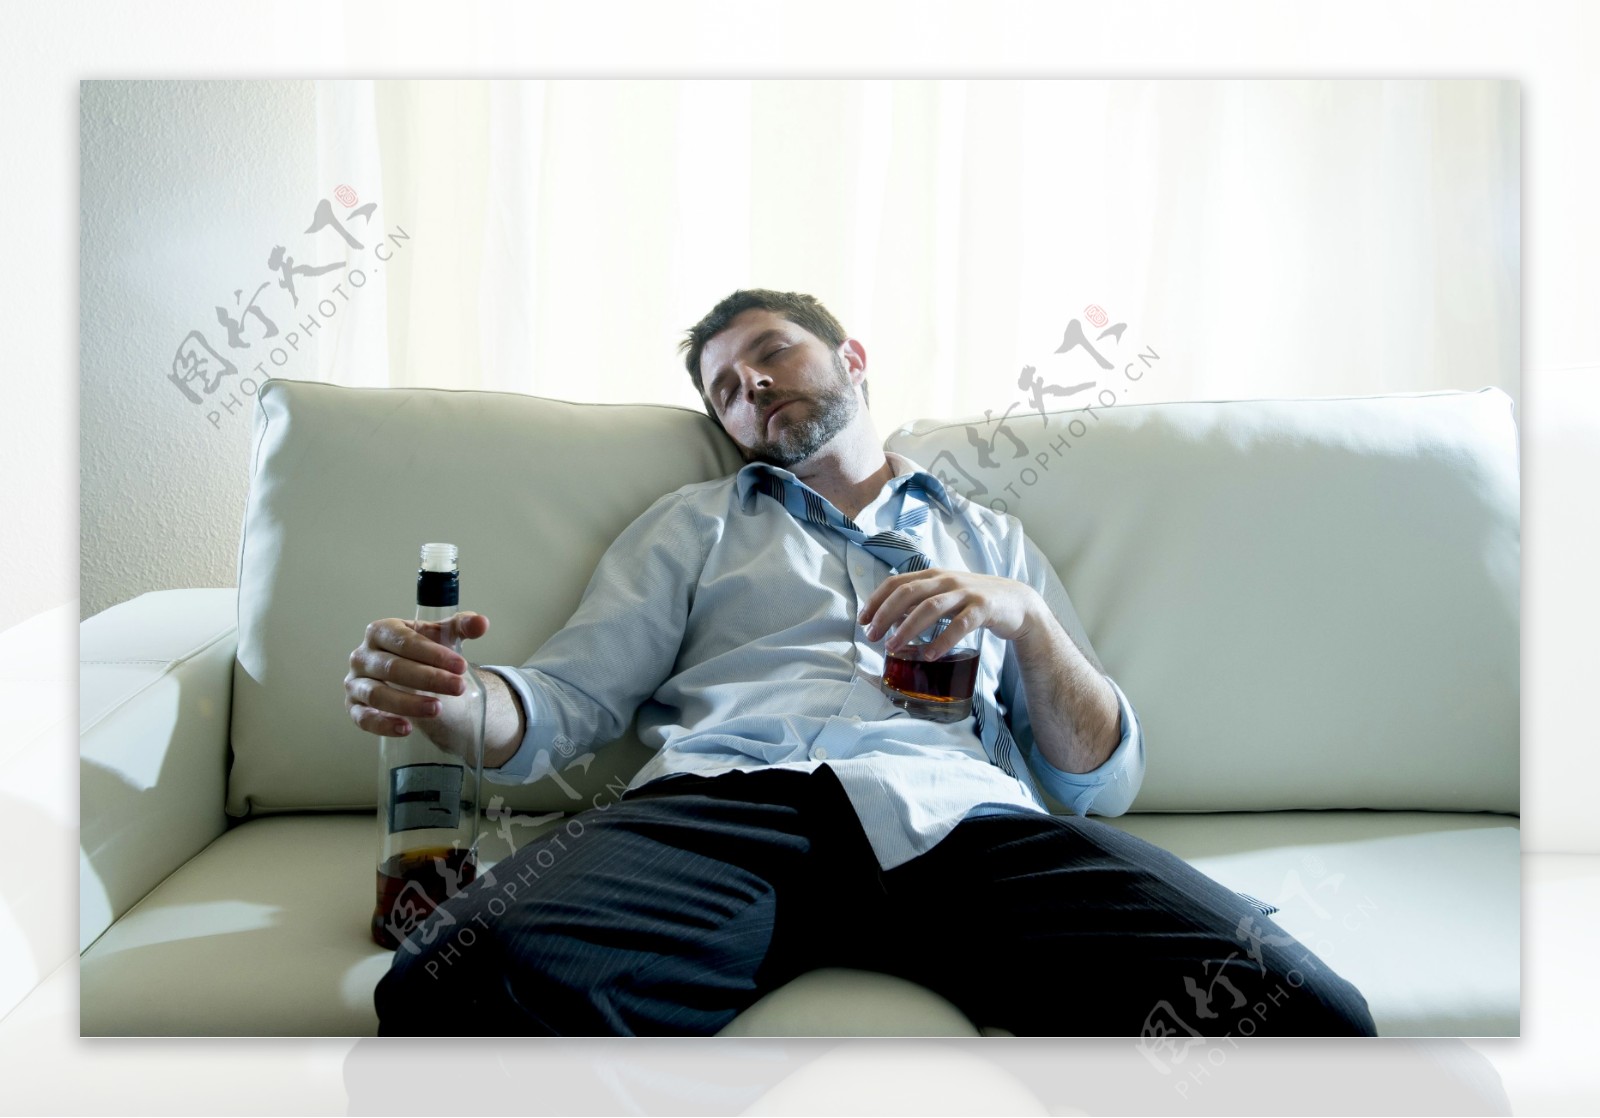 沙发上醉酒的男人图片